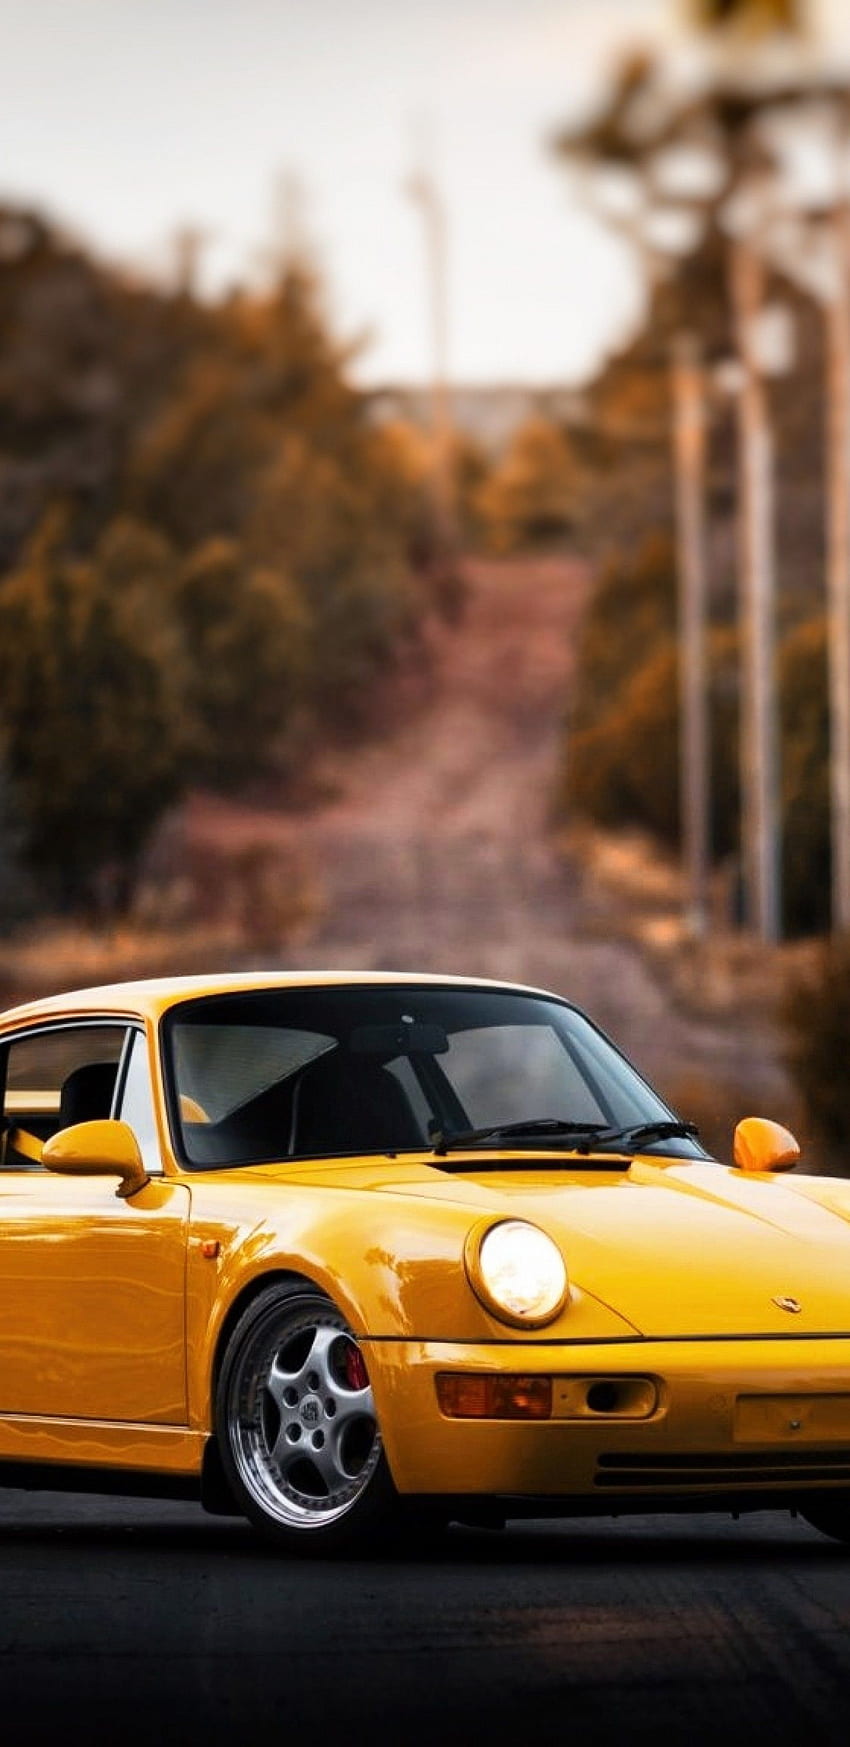 ポルシェ 911、黄色, スーパーカー、側面図、ポルシェ 930 HD電話の壁紙